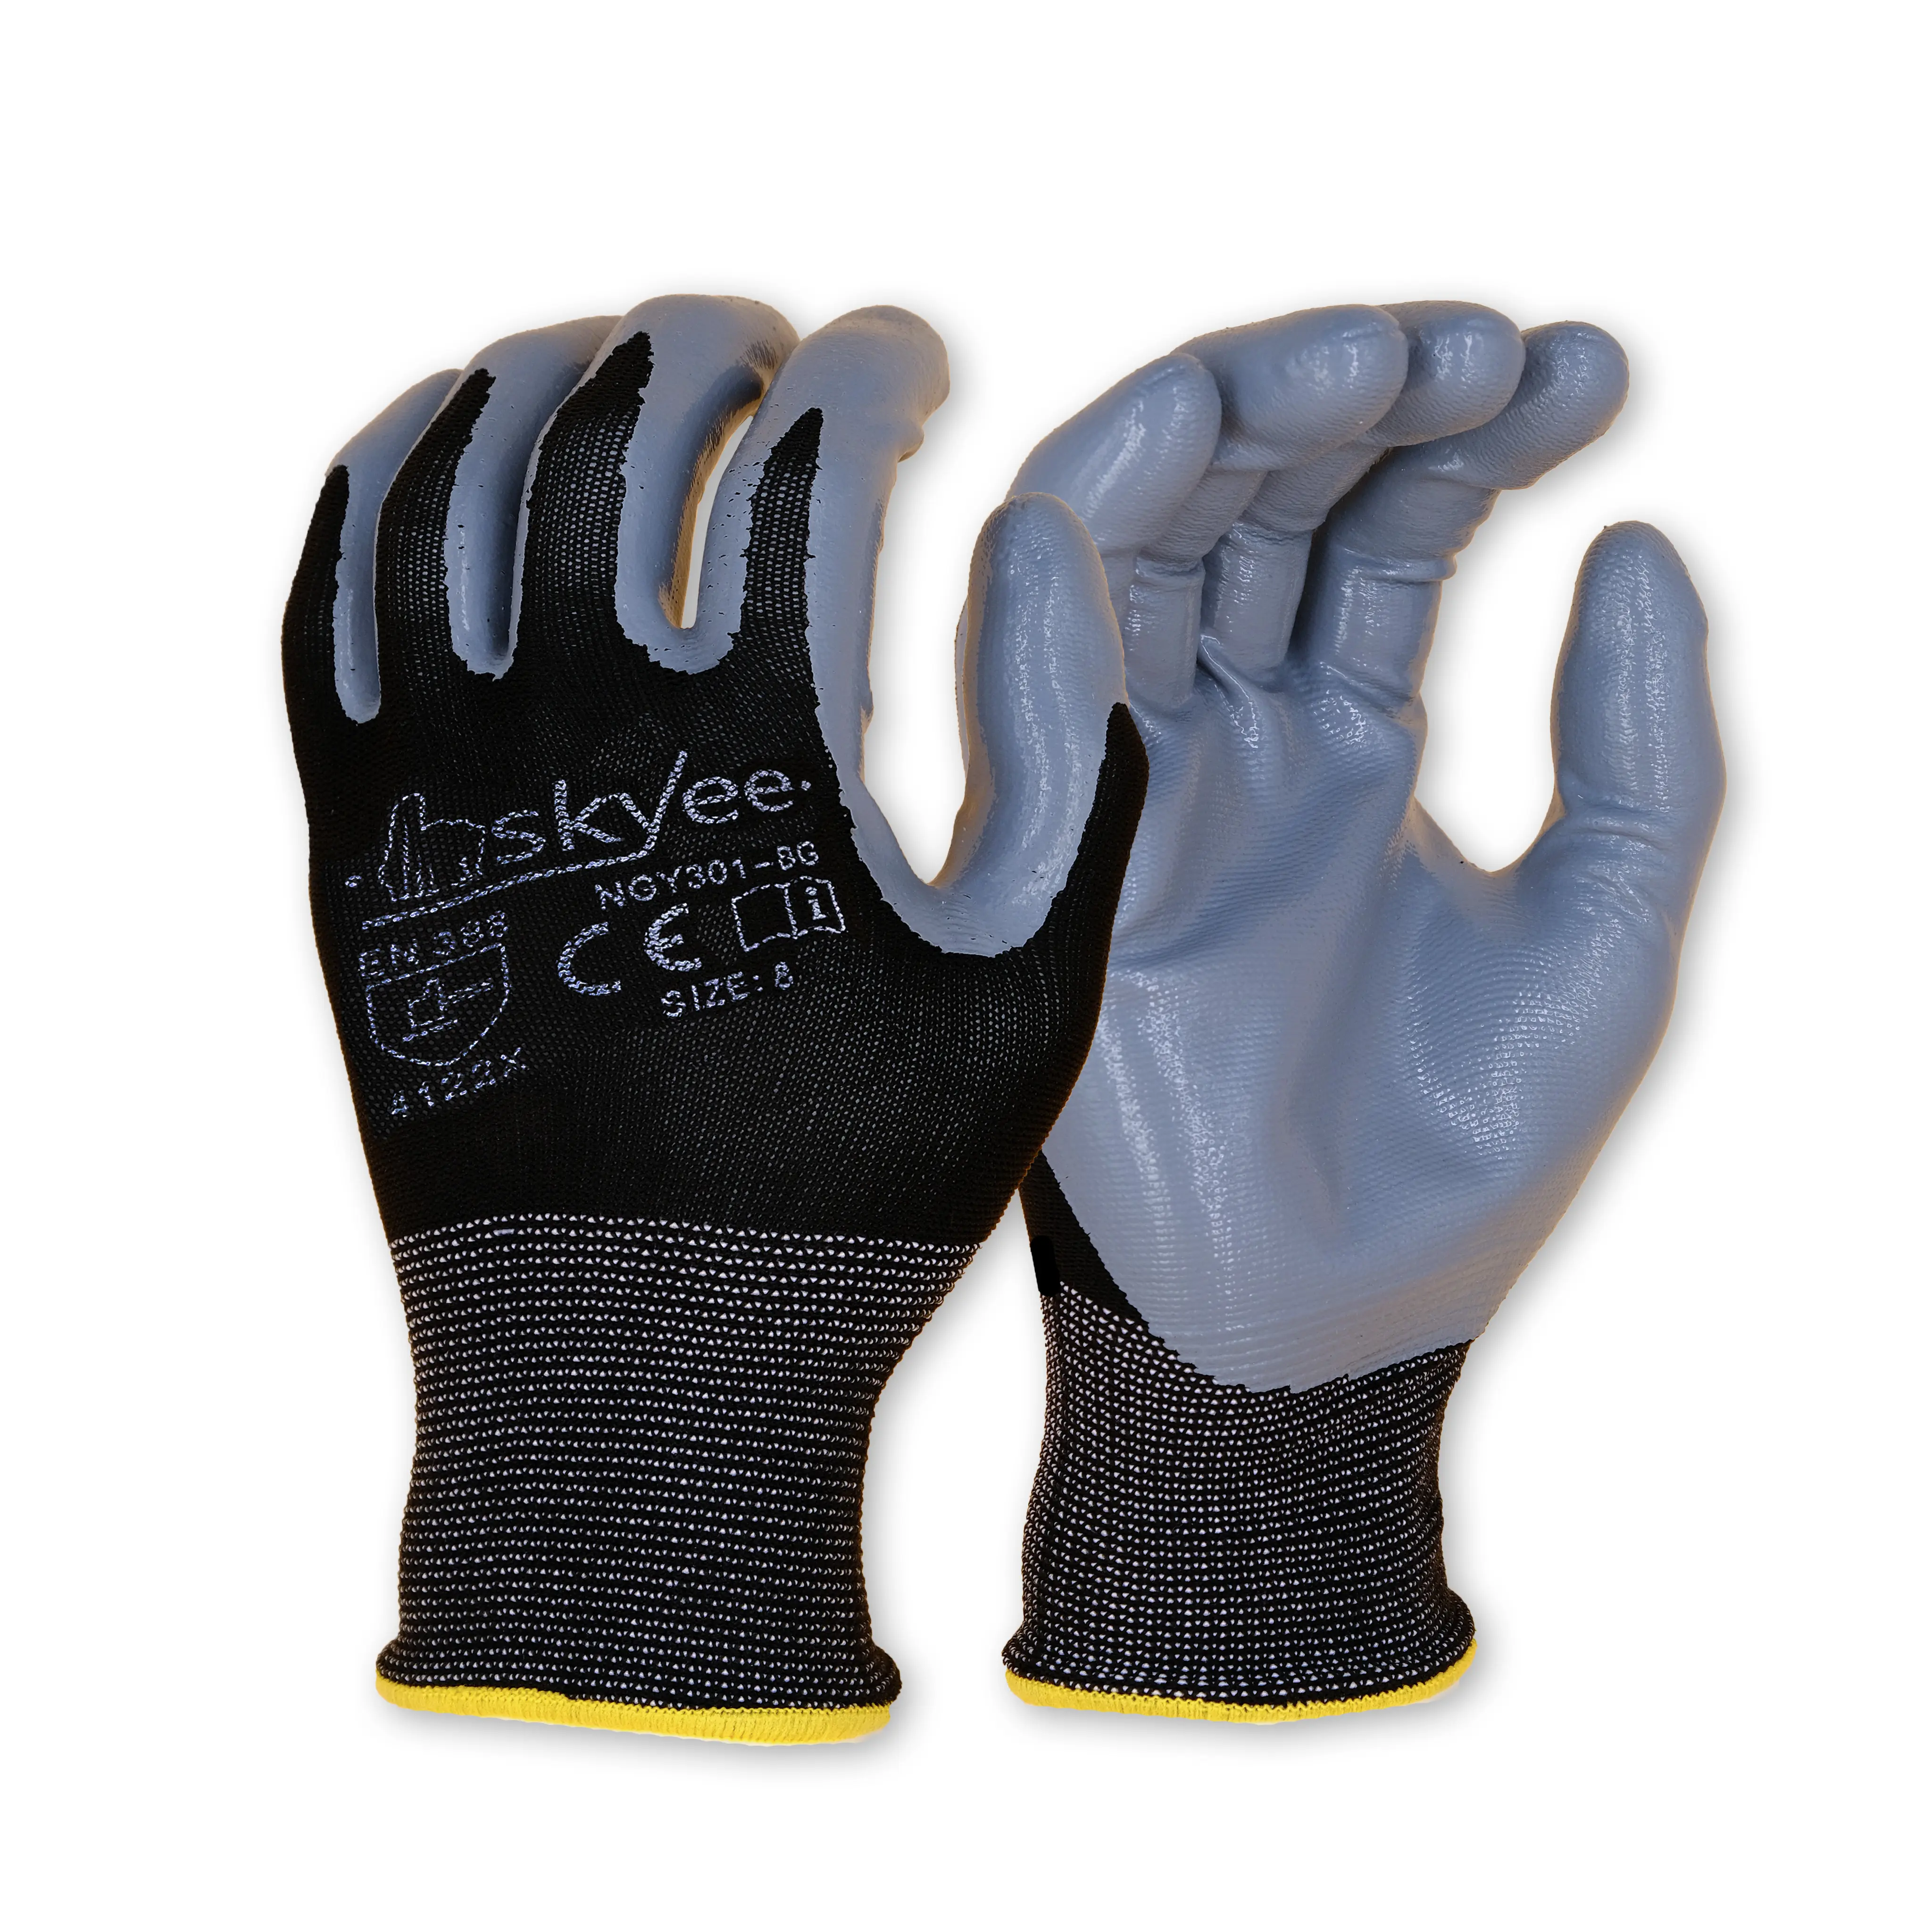 Skyee đa chức năng Nitrile tráng cấp 5 chống tác động cắt kháng an toàn làm việc bảo vệ tay xây dựng găng tay cho gardeingn